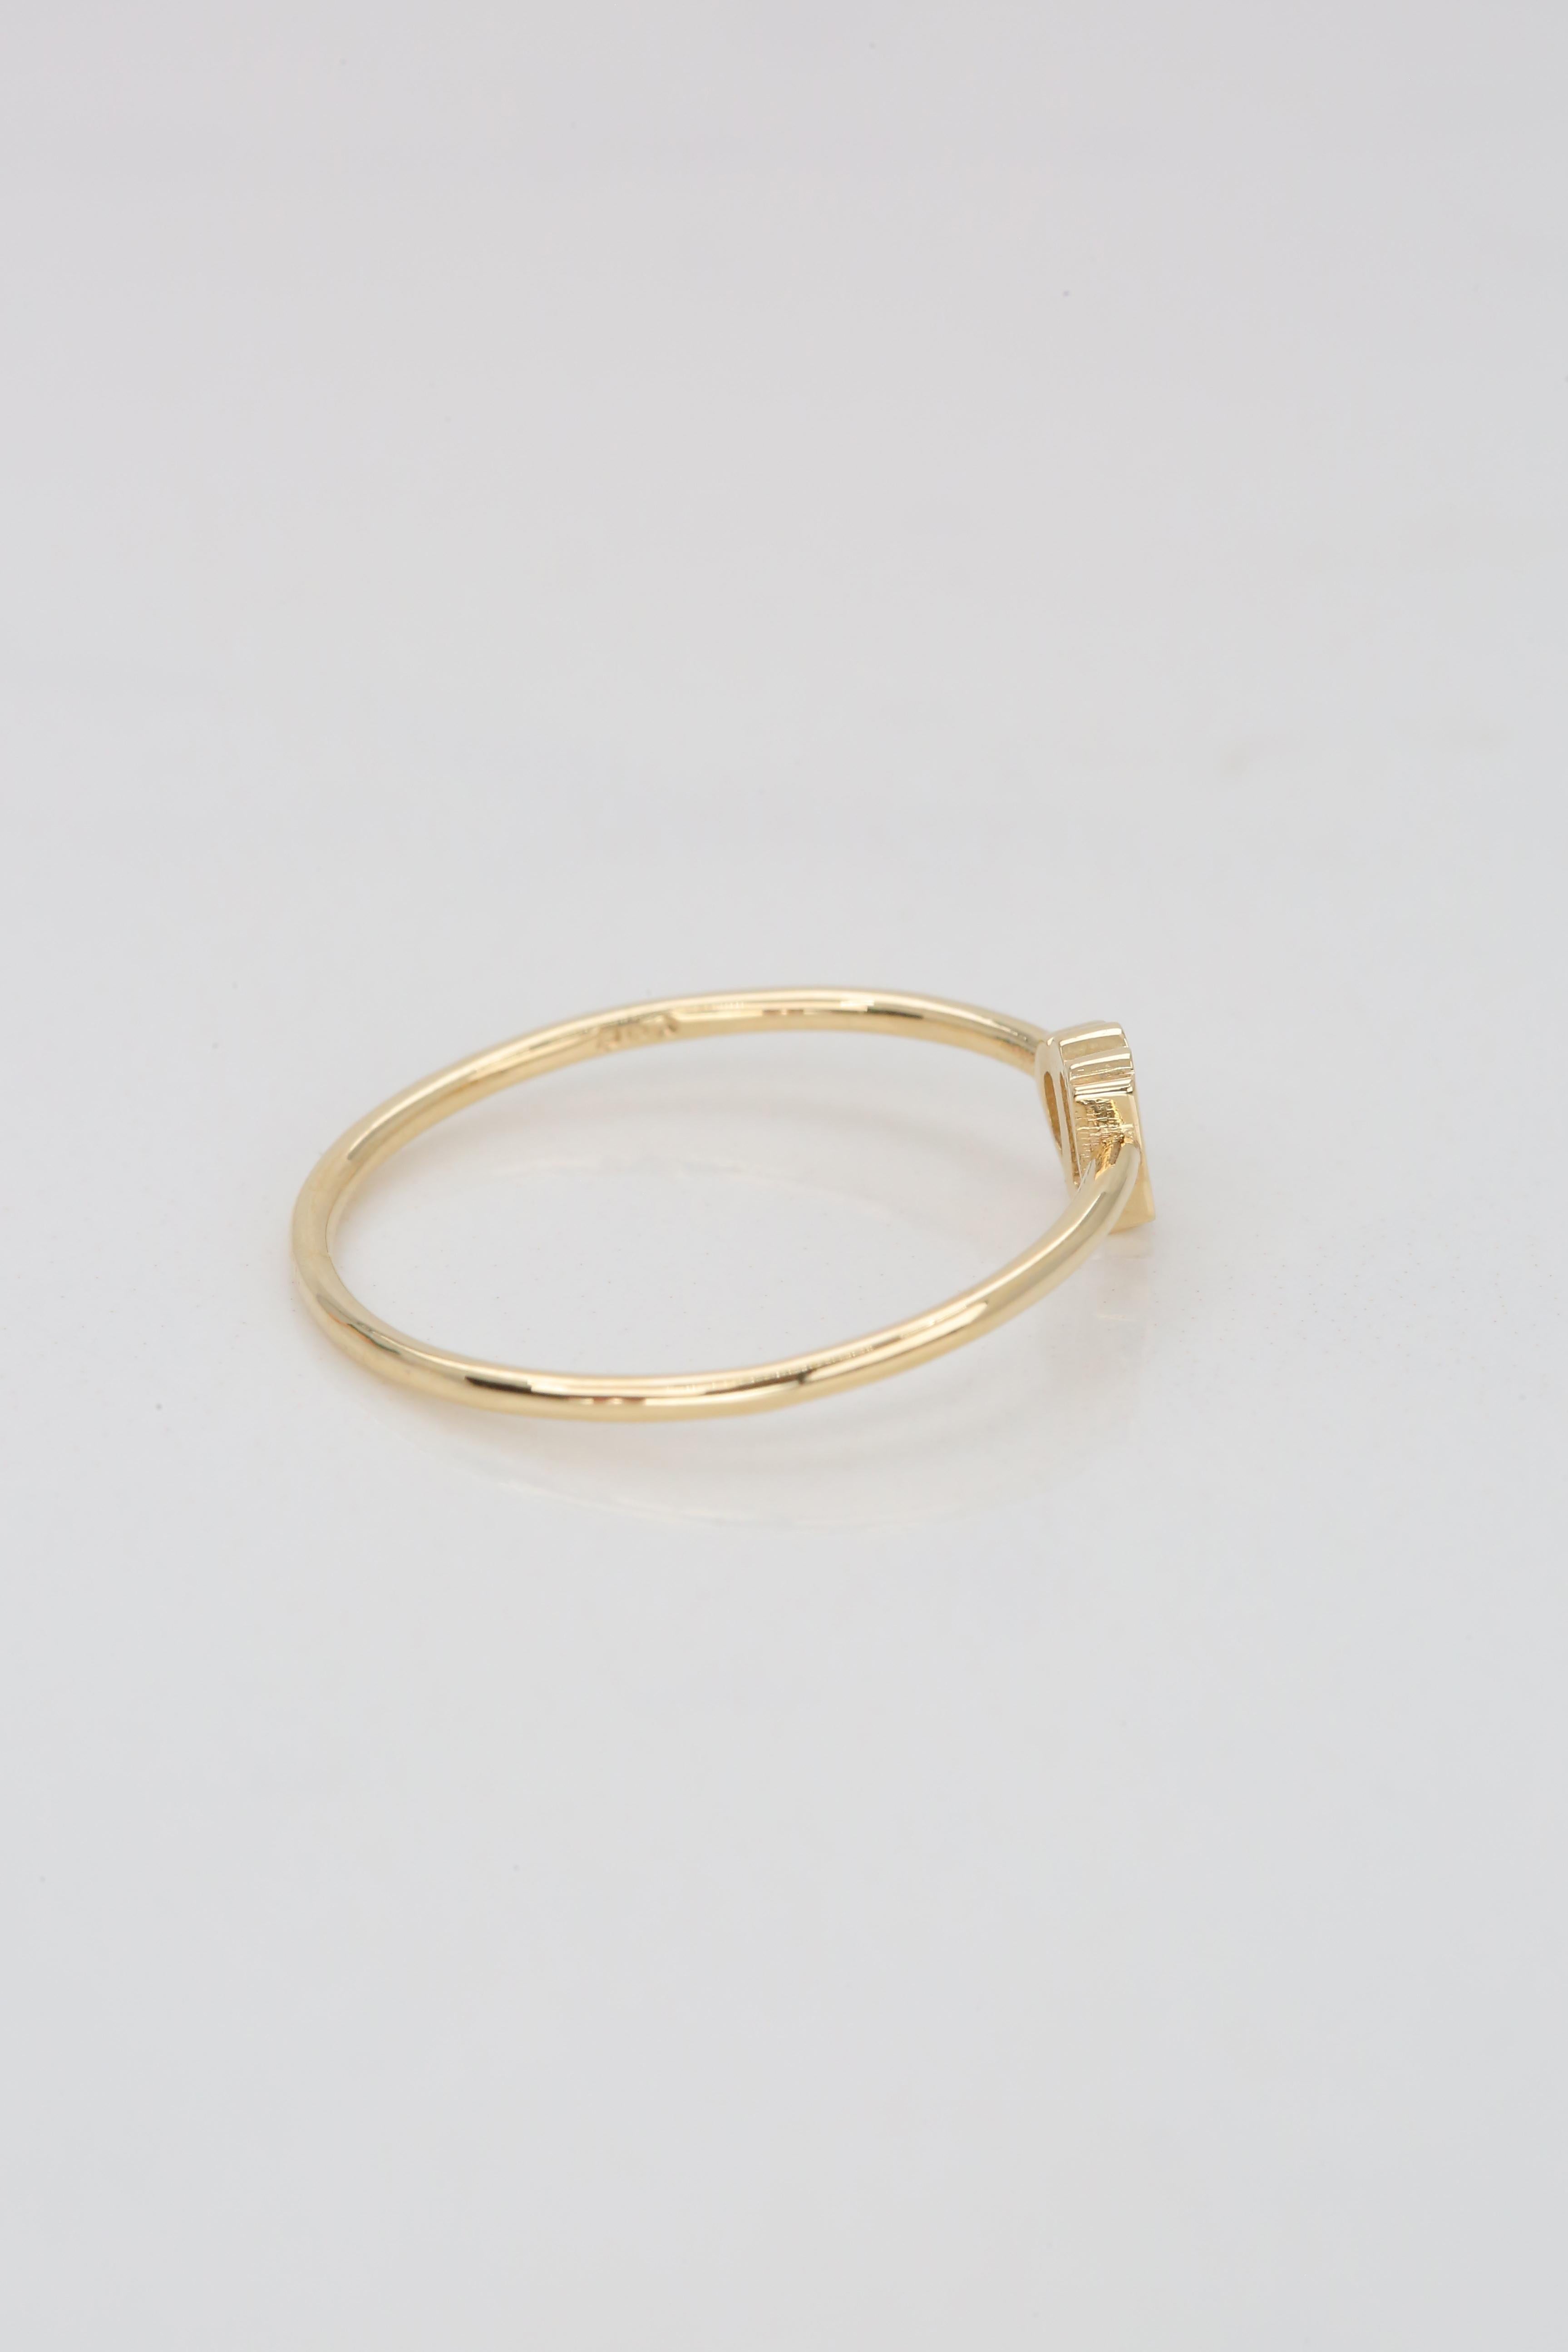 For Sale:  14K Gold Virgo Ring, Virgo Sign Ring 7